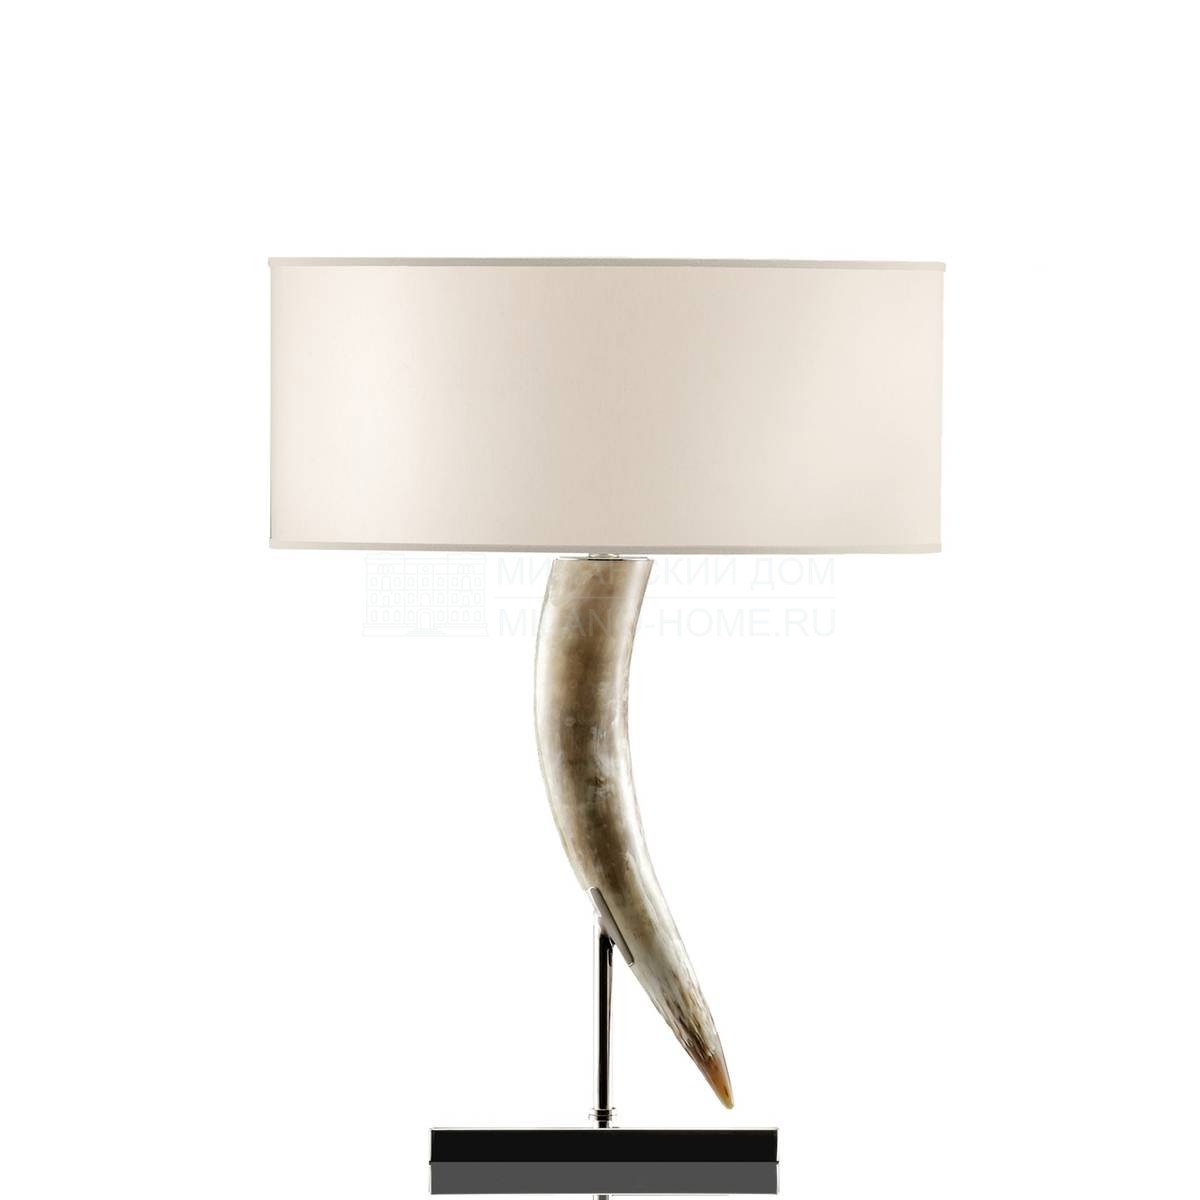 Настольная лампа Riace / art. 1256 из Италии фабрики ARCAHORN